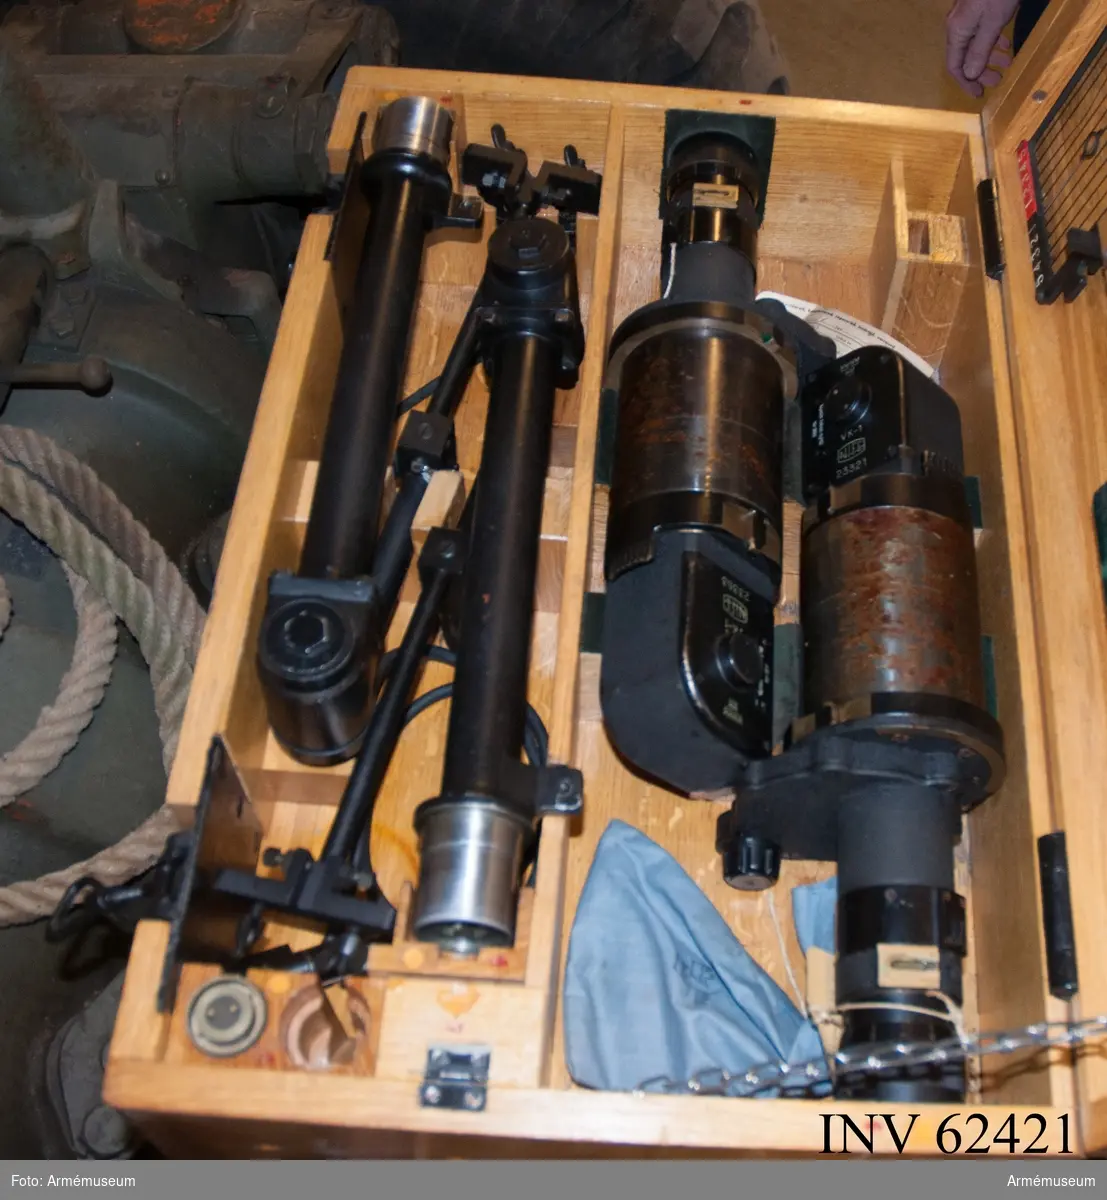 Grupp F I.
Kikare till 10,5 cm luftvärnskanon m/1942, nr 36. I låda.
Samhörande är kanon, reservdelar i låda, verktyg i låda, nattbelysning i låda, lavettlåda med kikare och kvadrant.